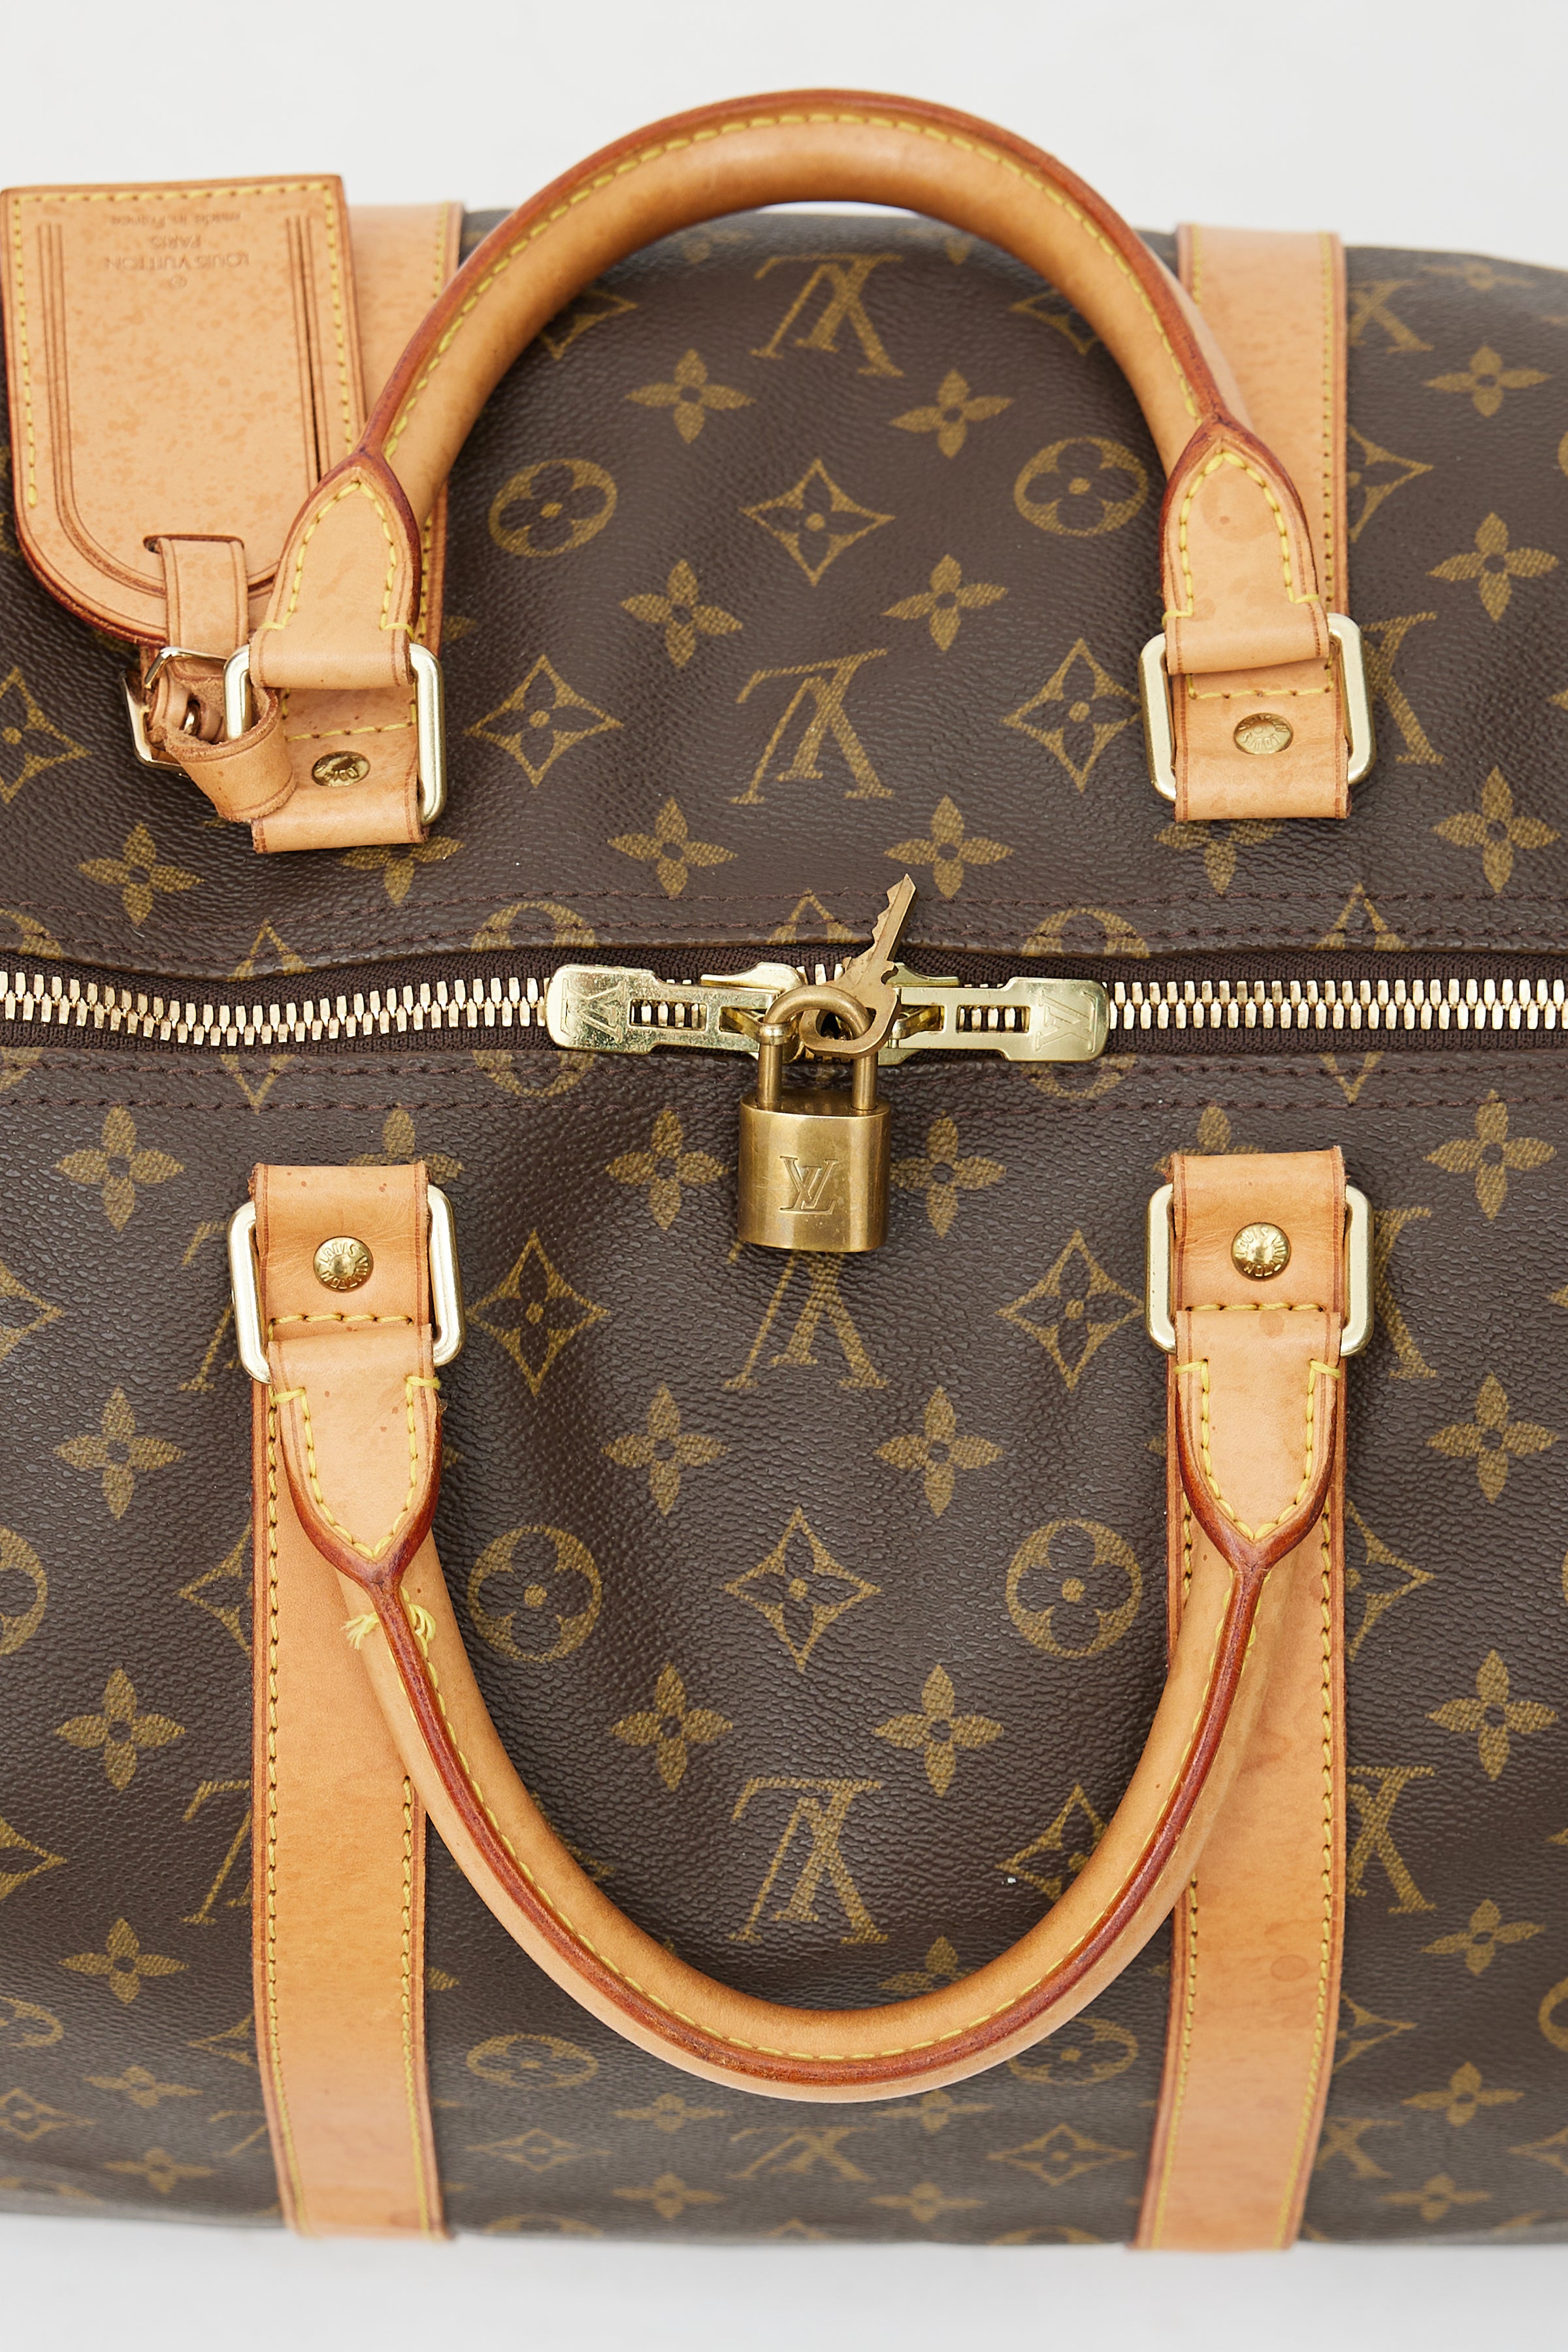 Louis Vuitton Torba Keepall 55 w kolorze brązowym 55 x 28 x 21 cm